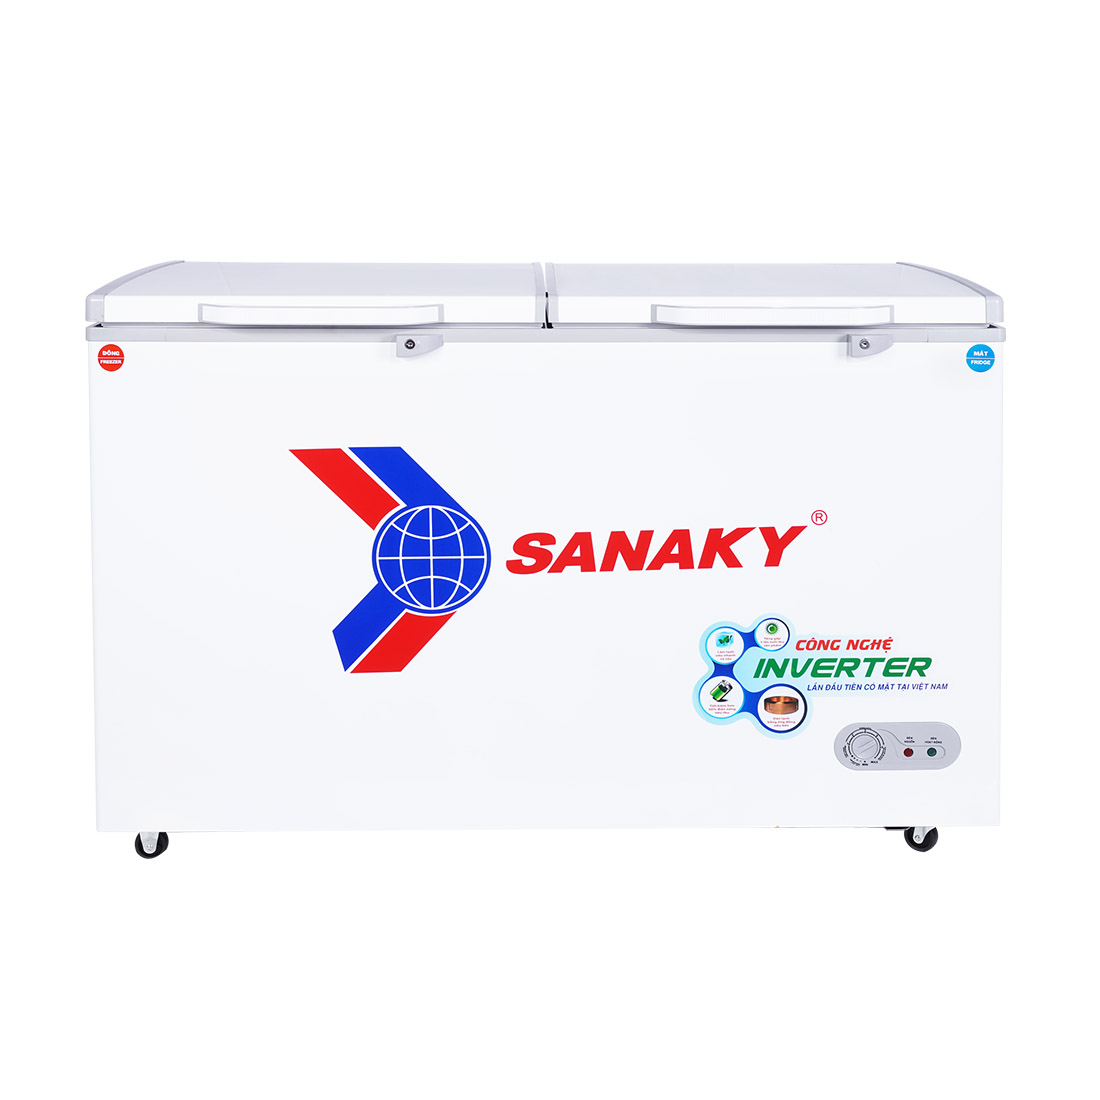 Tủ Đông Sanaky VH-5699W3